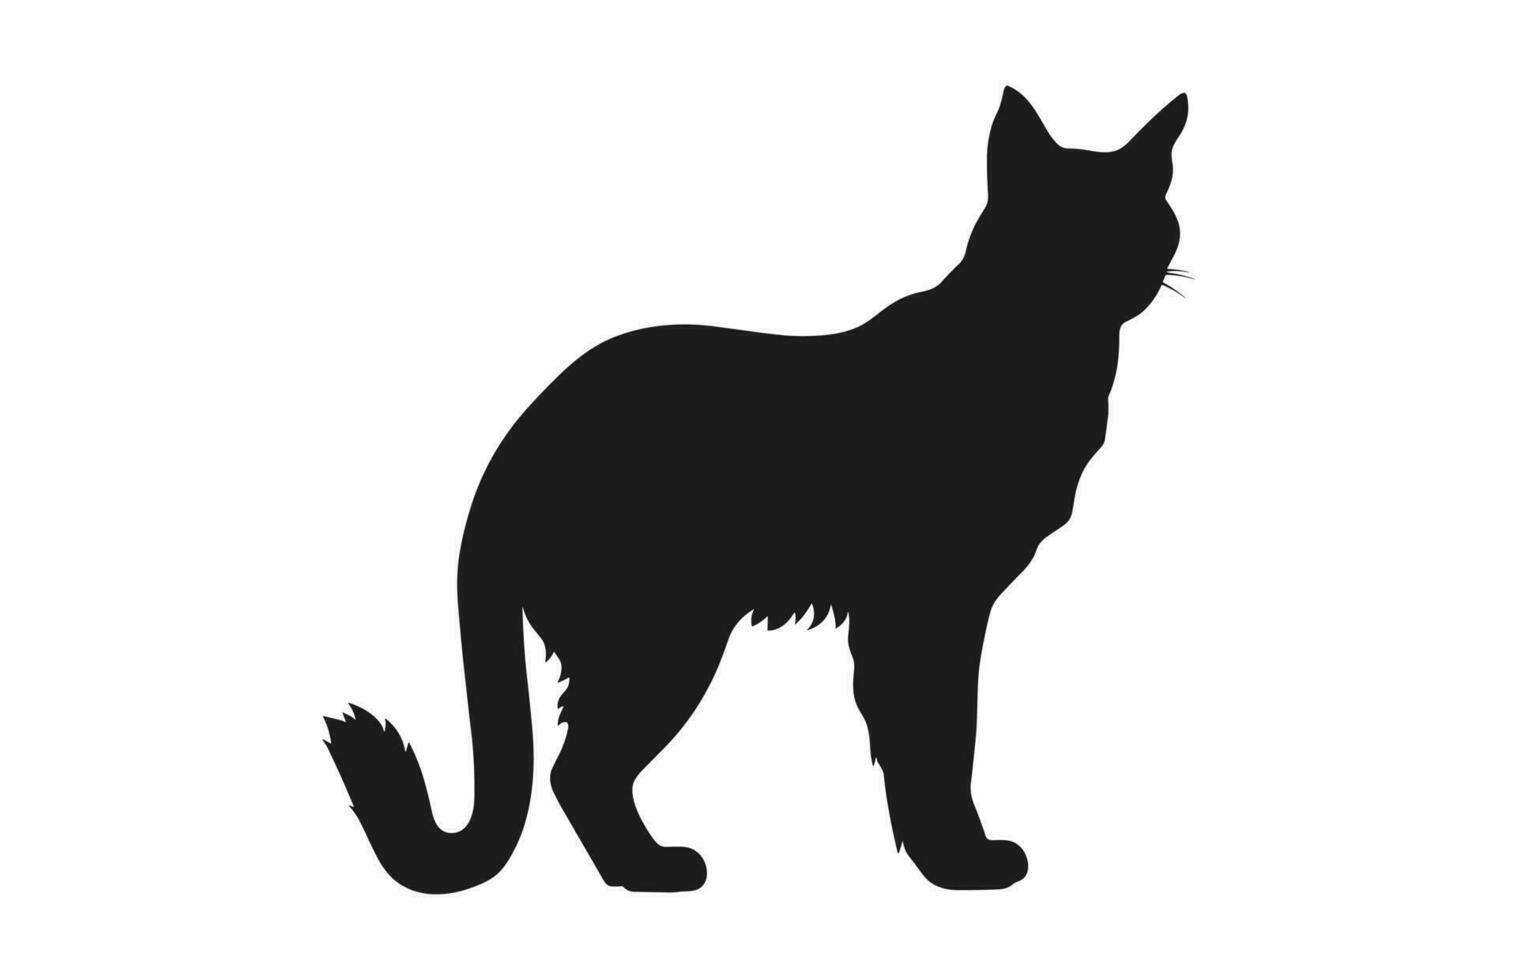 lince gato negro silueta vector gratis